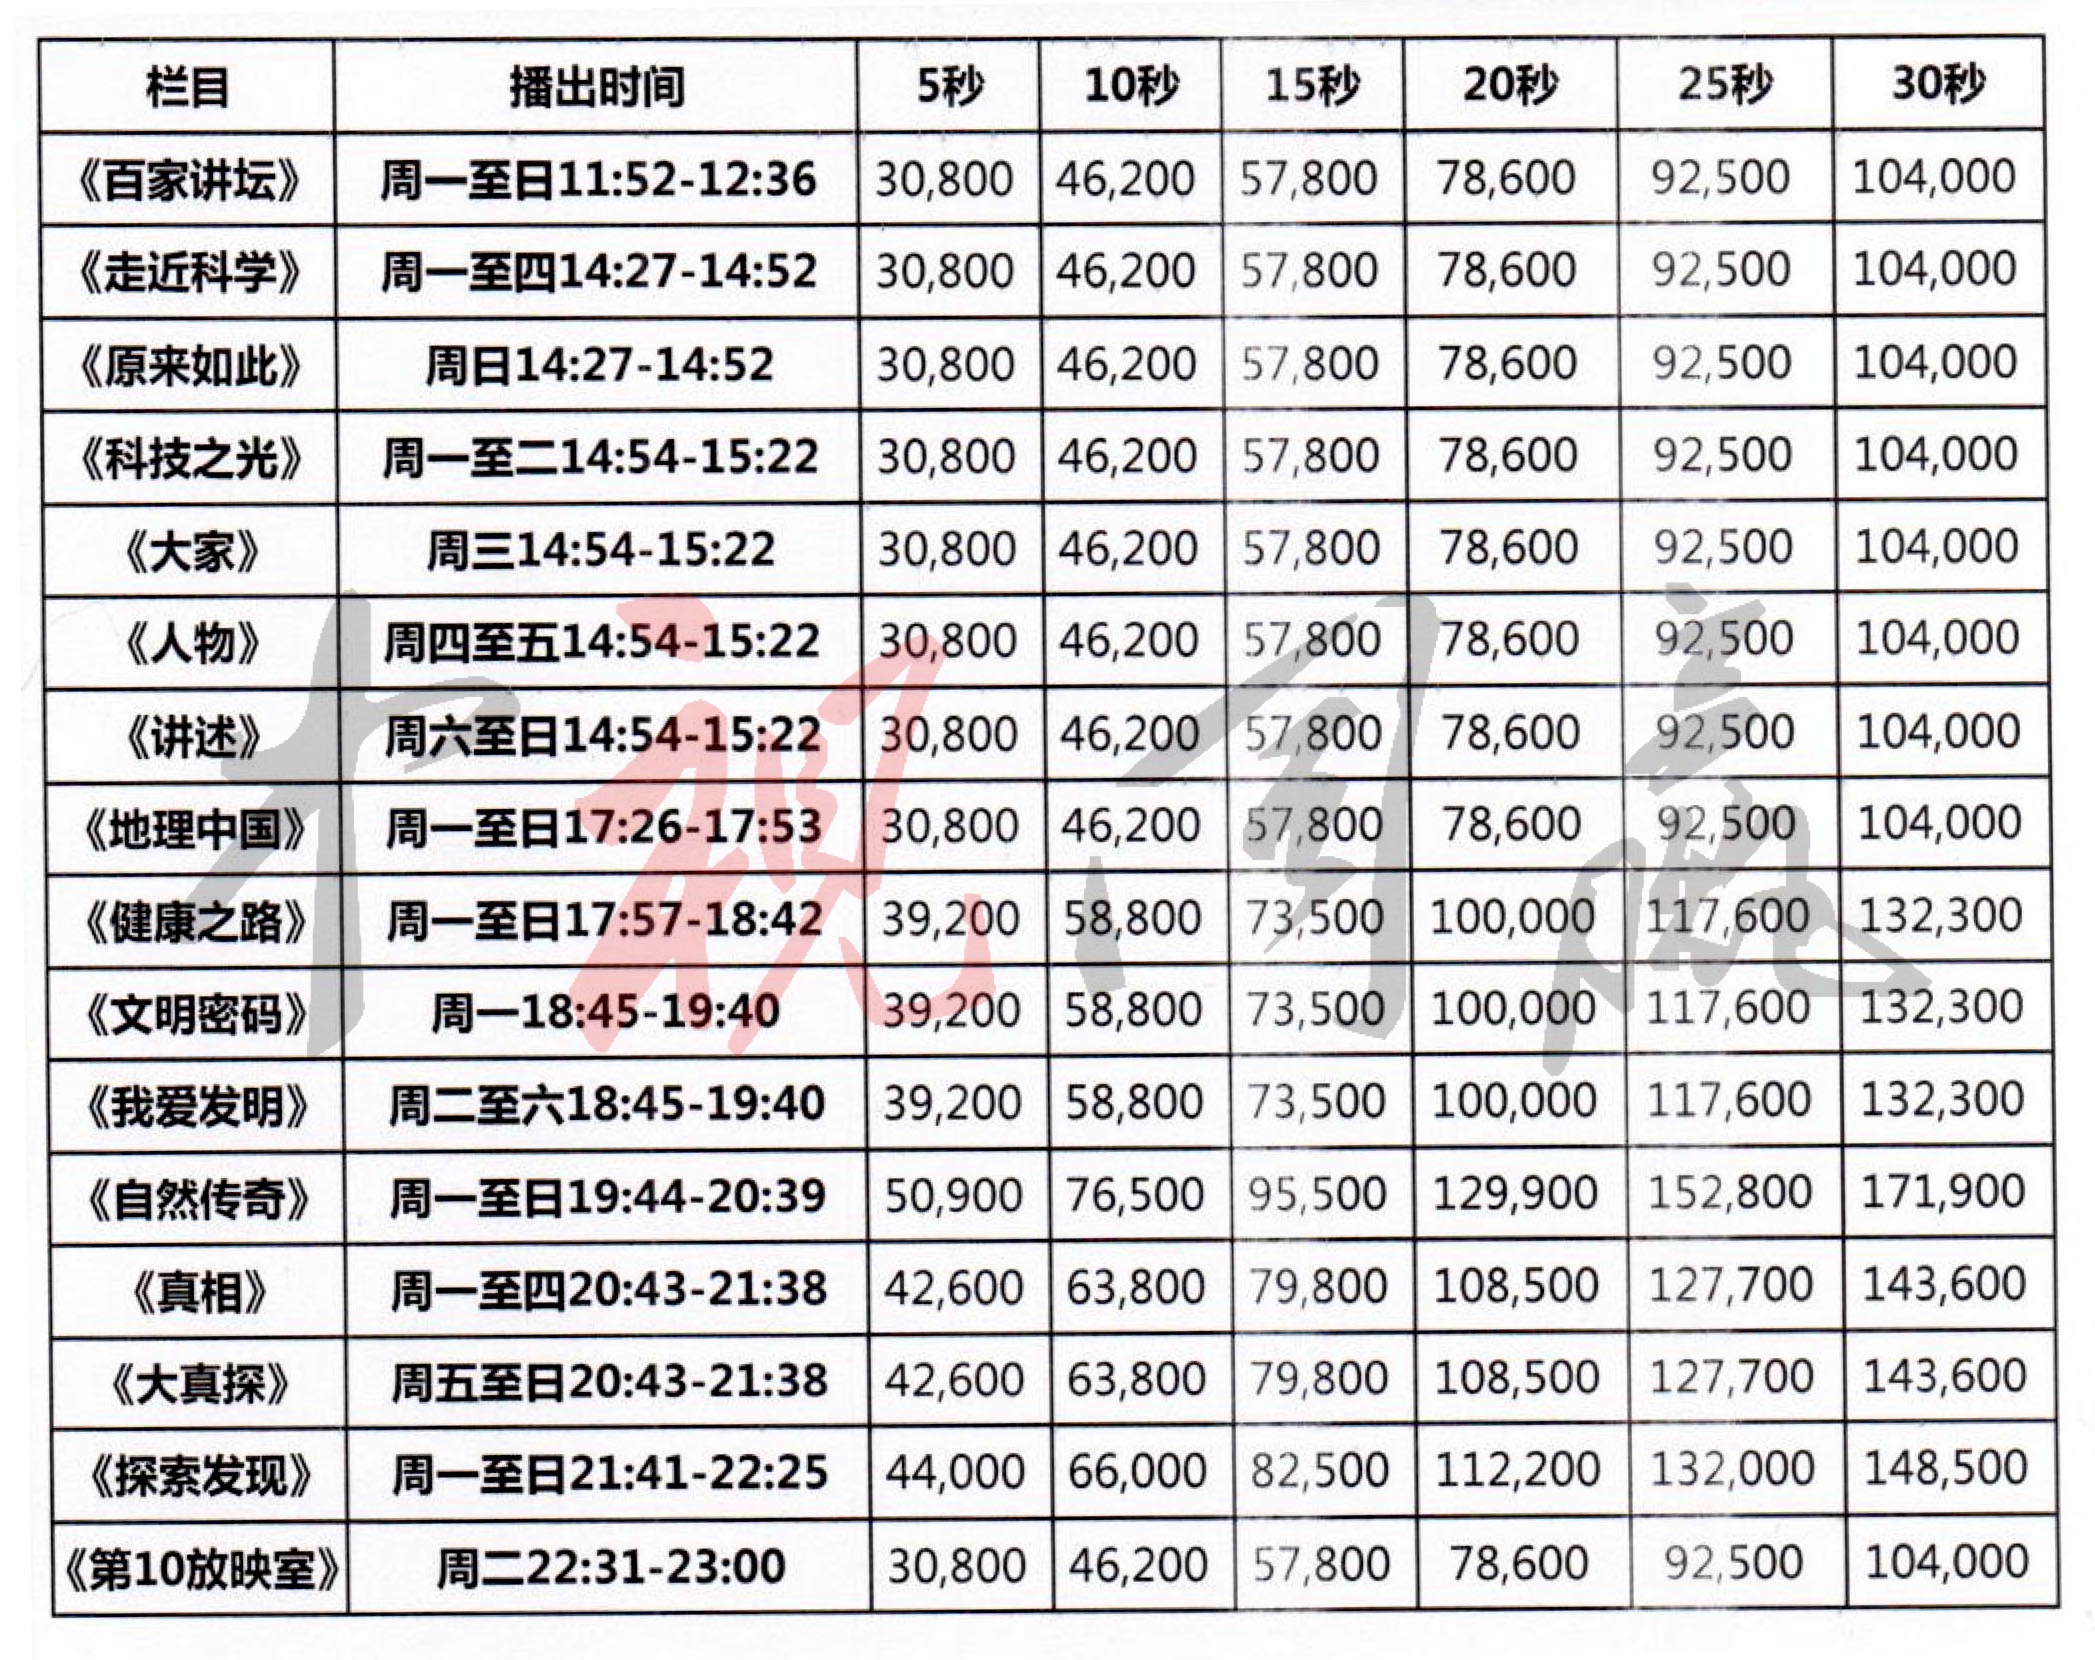 2019年CCTV-10栏目广告刊例价格表@中视同赢